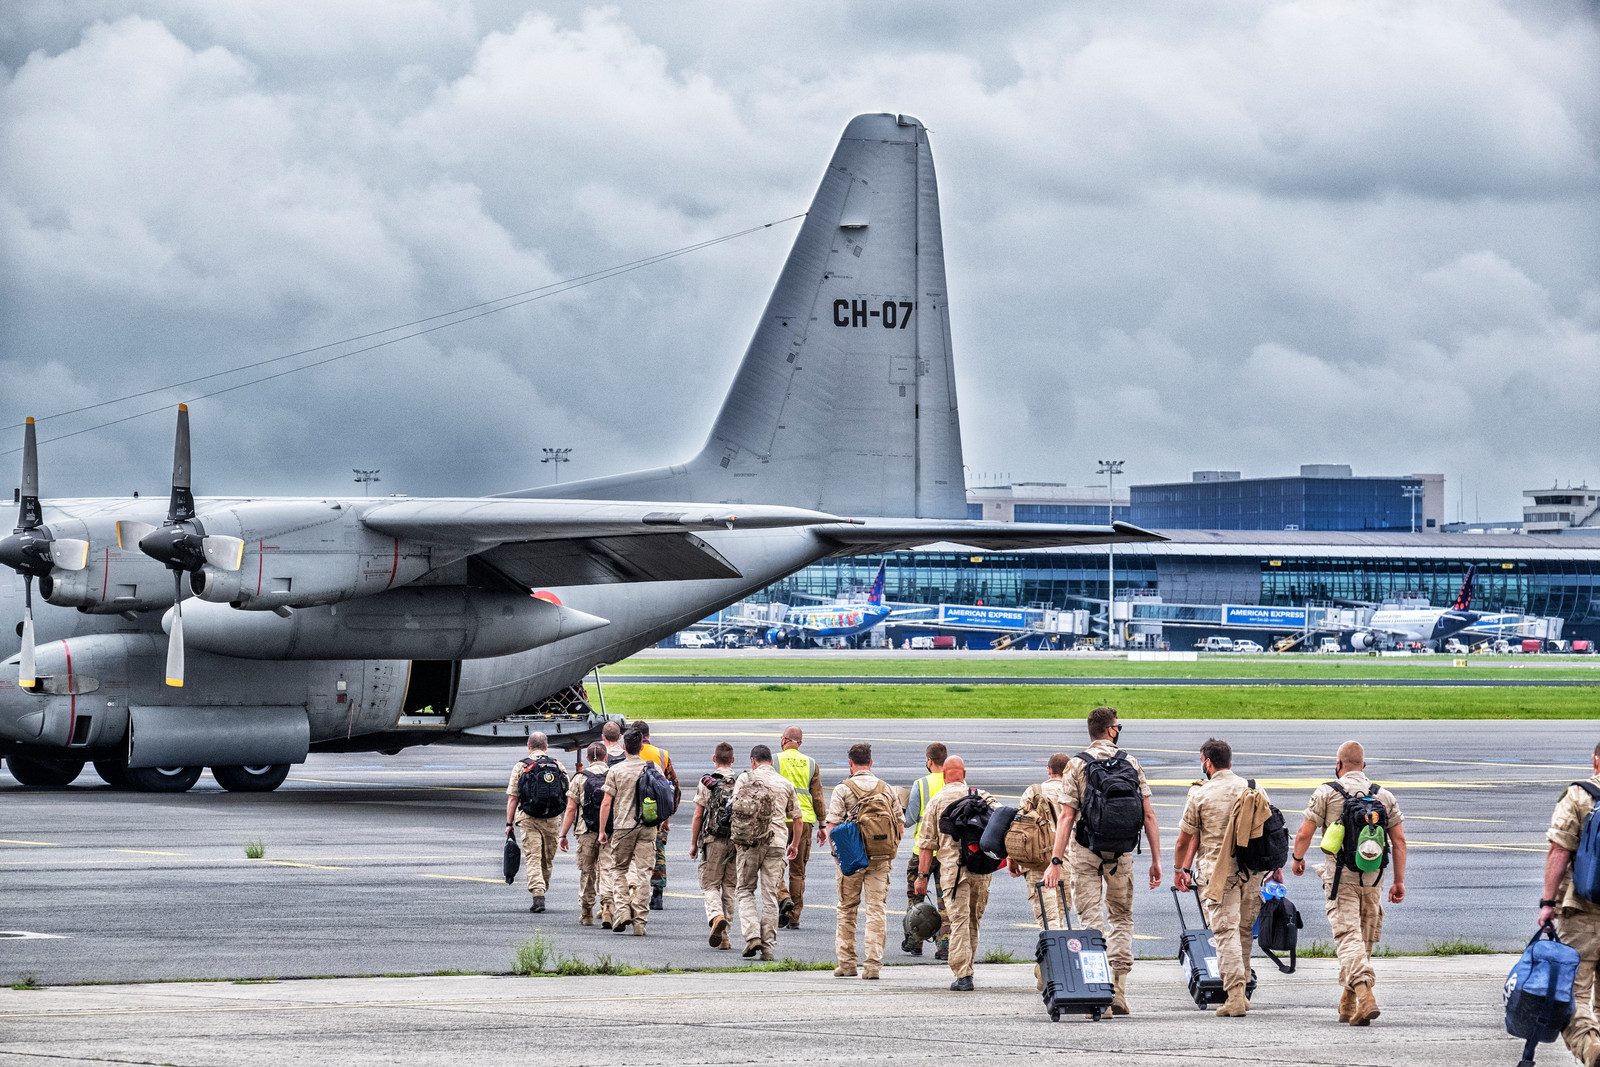 De C-130's zijn woensdag opgestegen in Melsbroek. Donderdagavond rond 19.15 uur Belgische tijd zouden ze in Islamabad zijn aangekomen. Beeld Tim Dirven